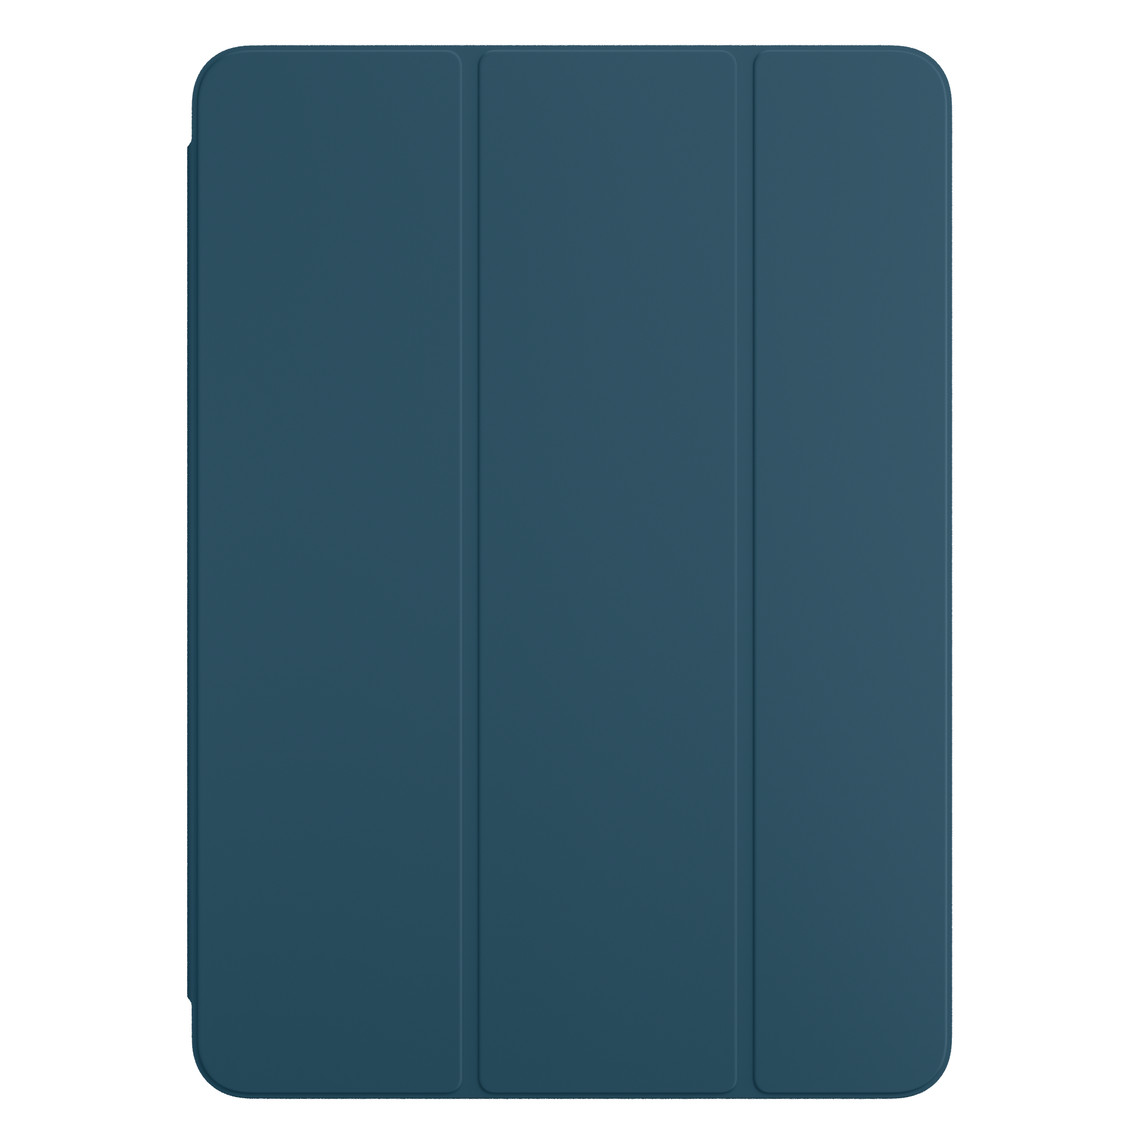 Vista frontal de la funda Smart Folio para el iPad Pro en azul marino.